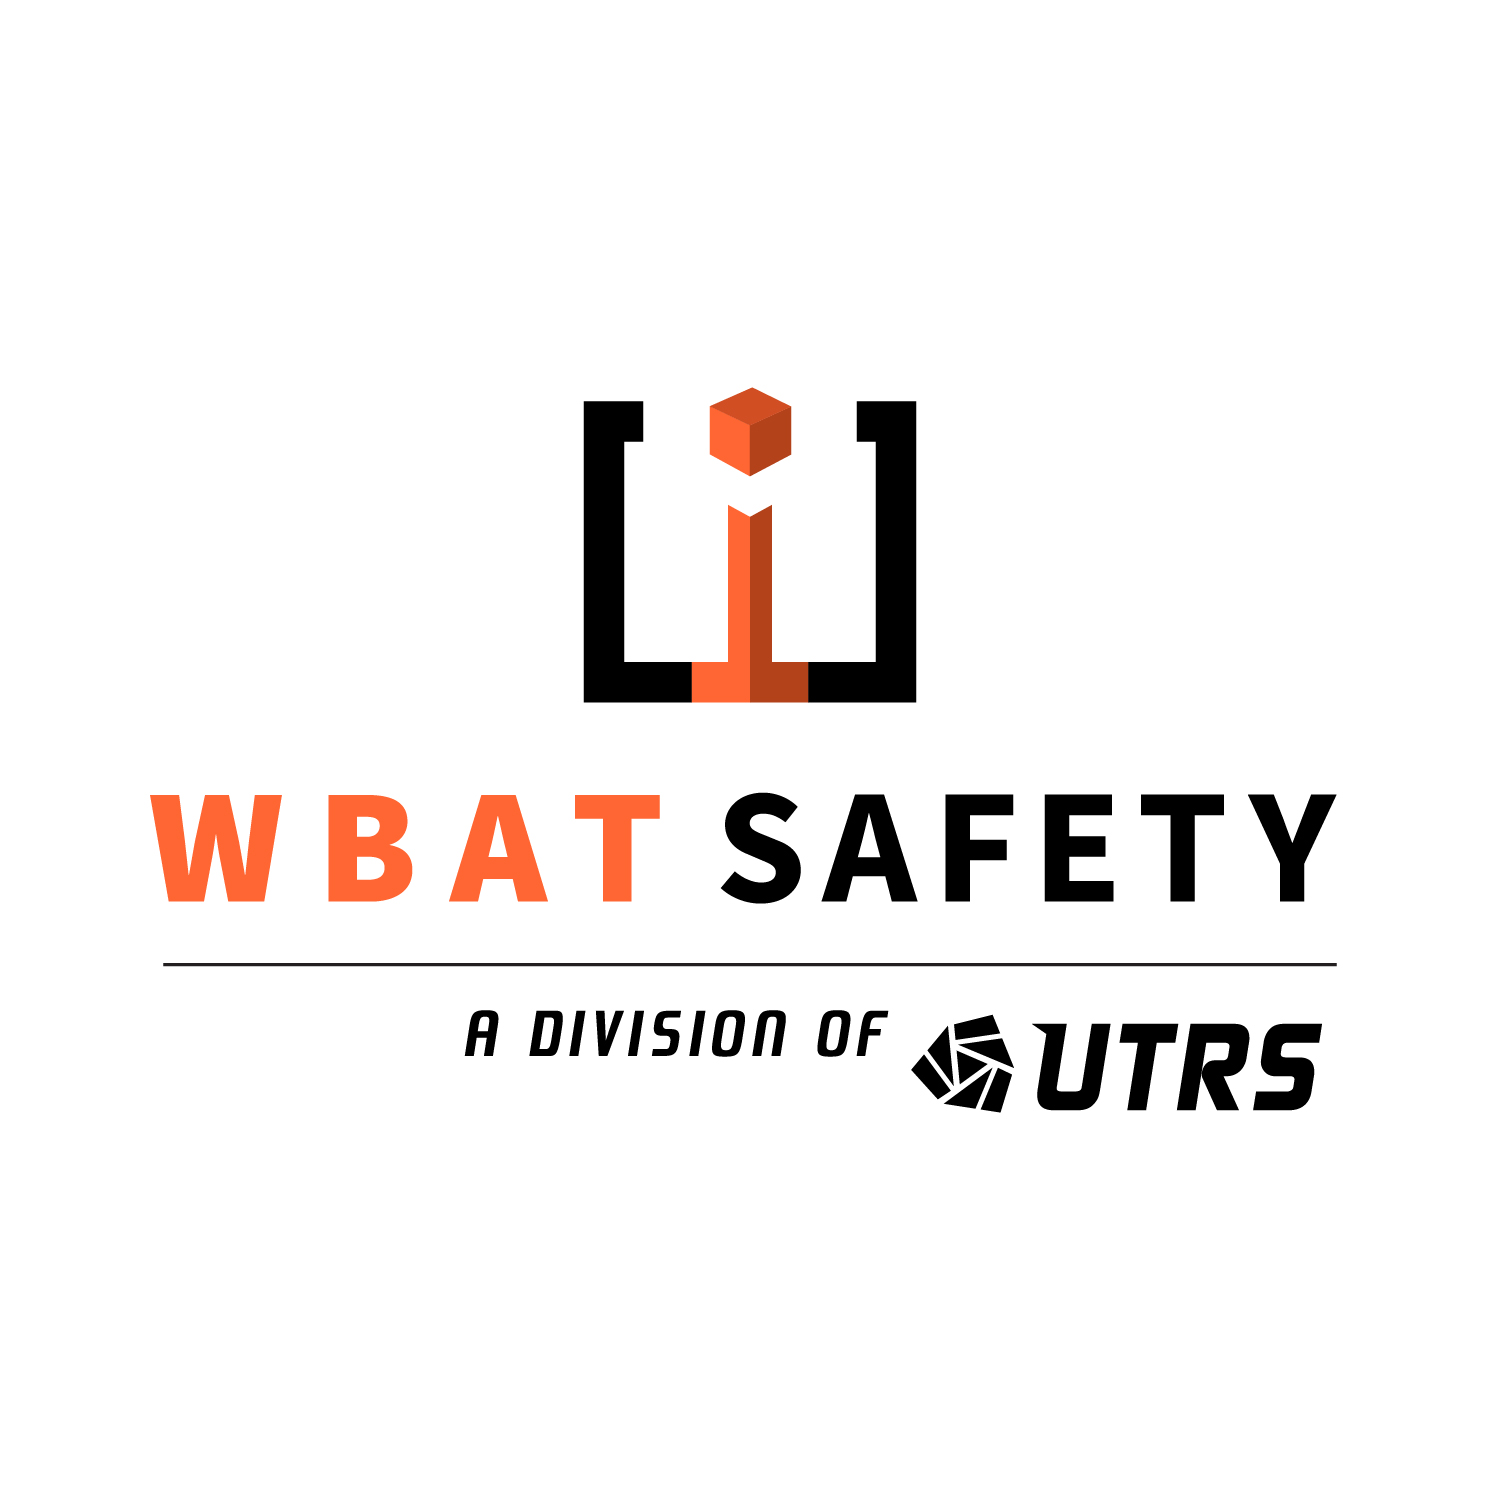 WBAT Safety